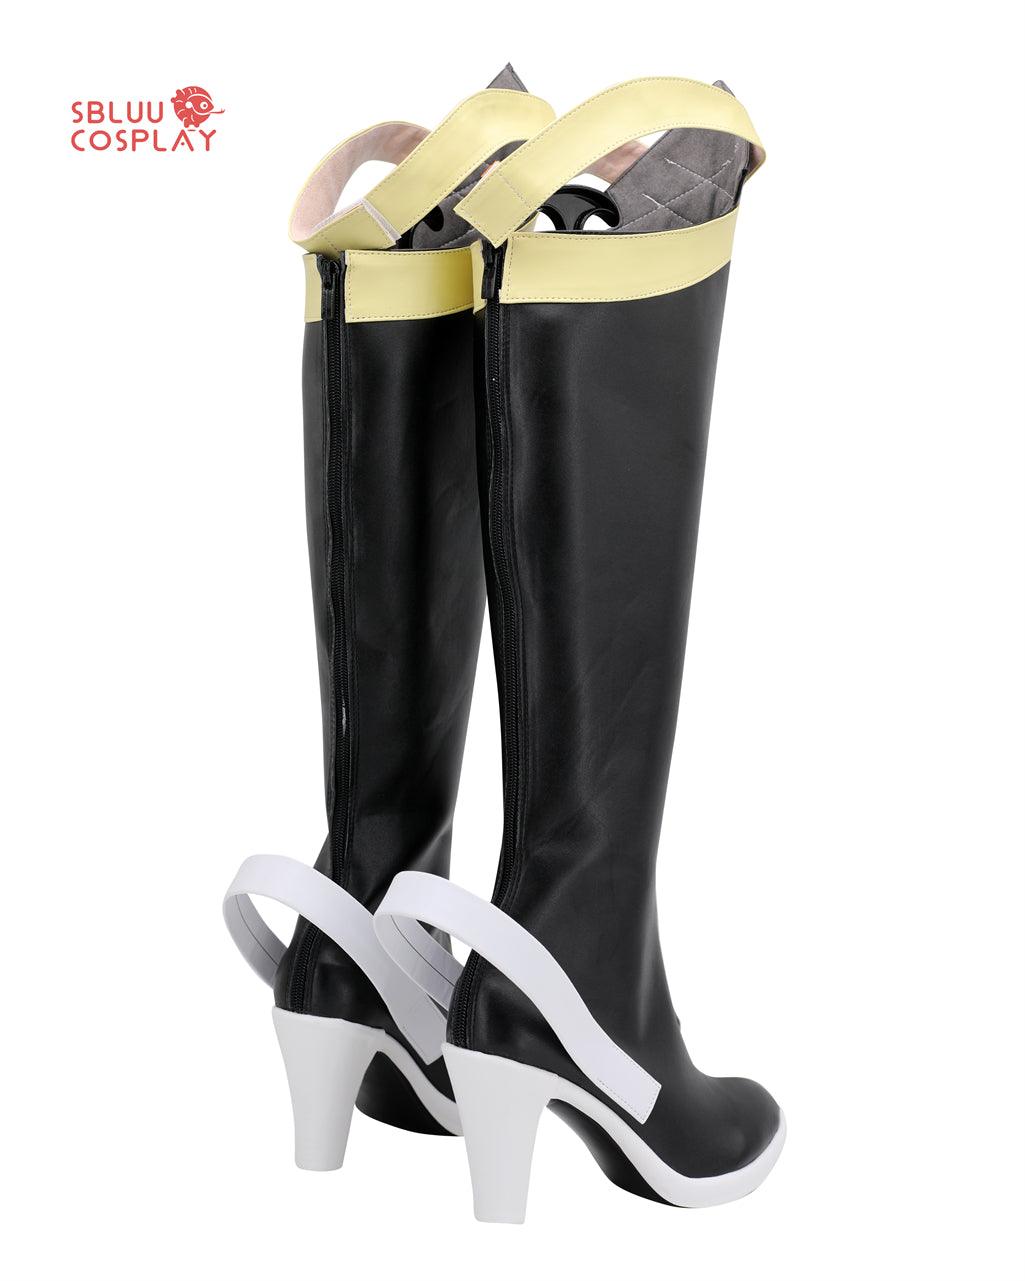 Sword Art Online Asada Shino Cosplay Shoes Custom Made Boots - SBluuCosplay